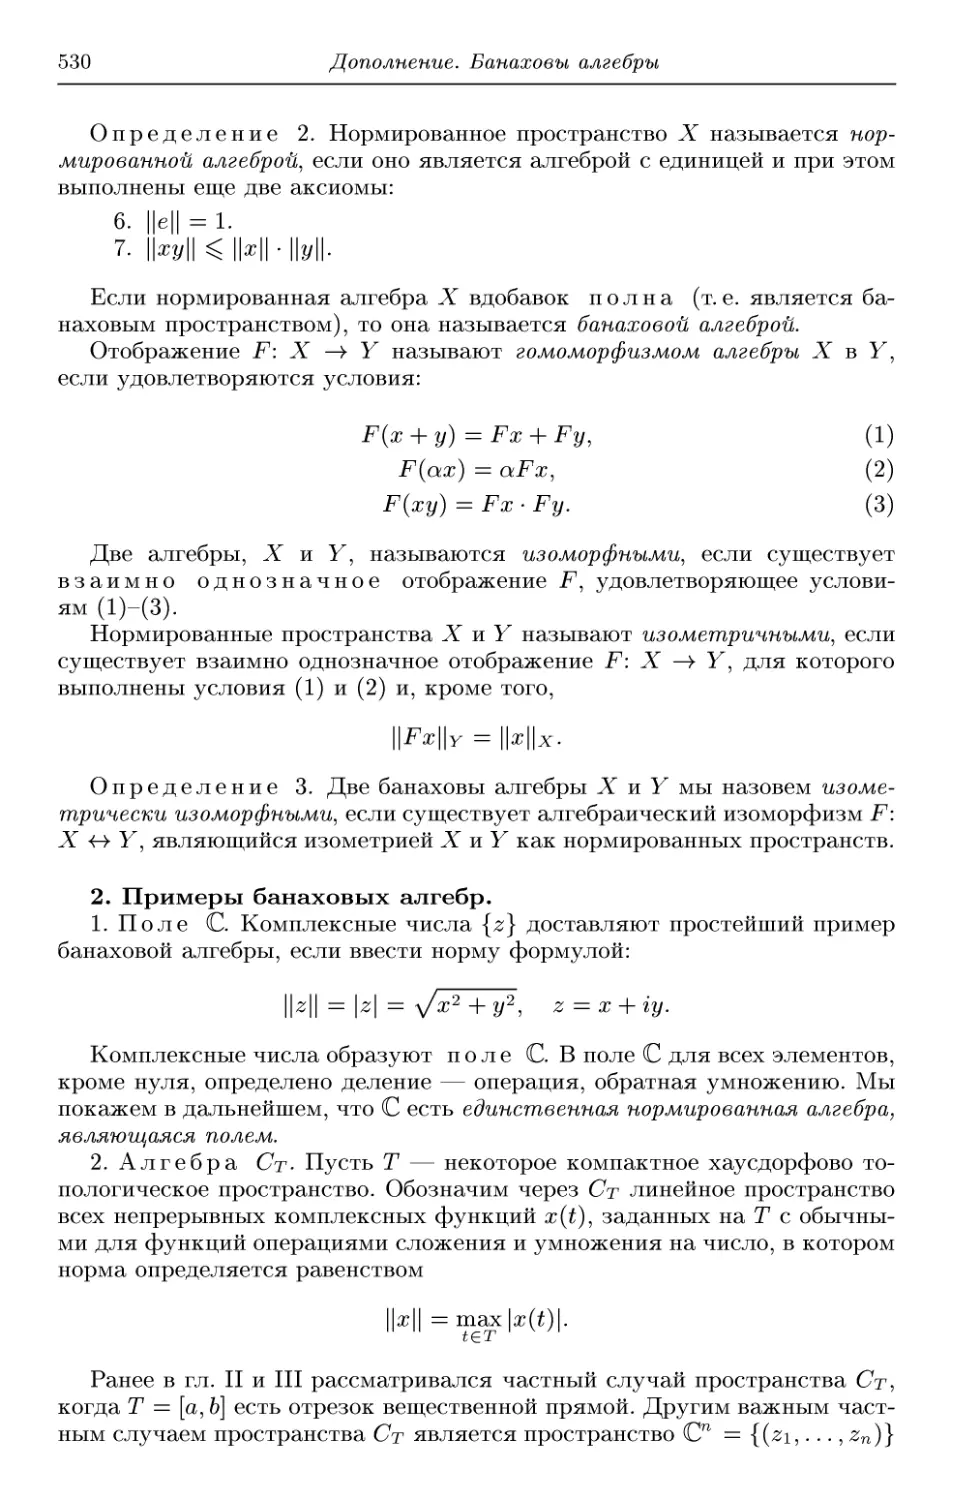 2. Примеры банаховых алгебр